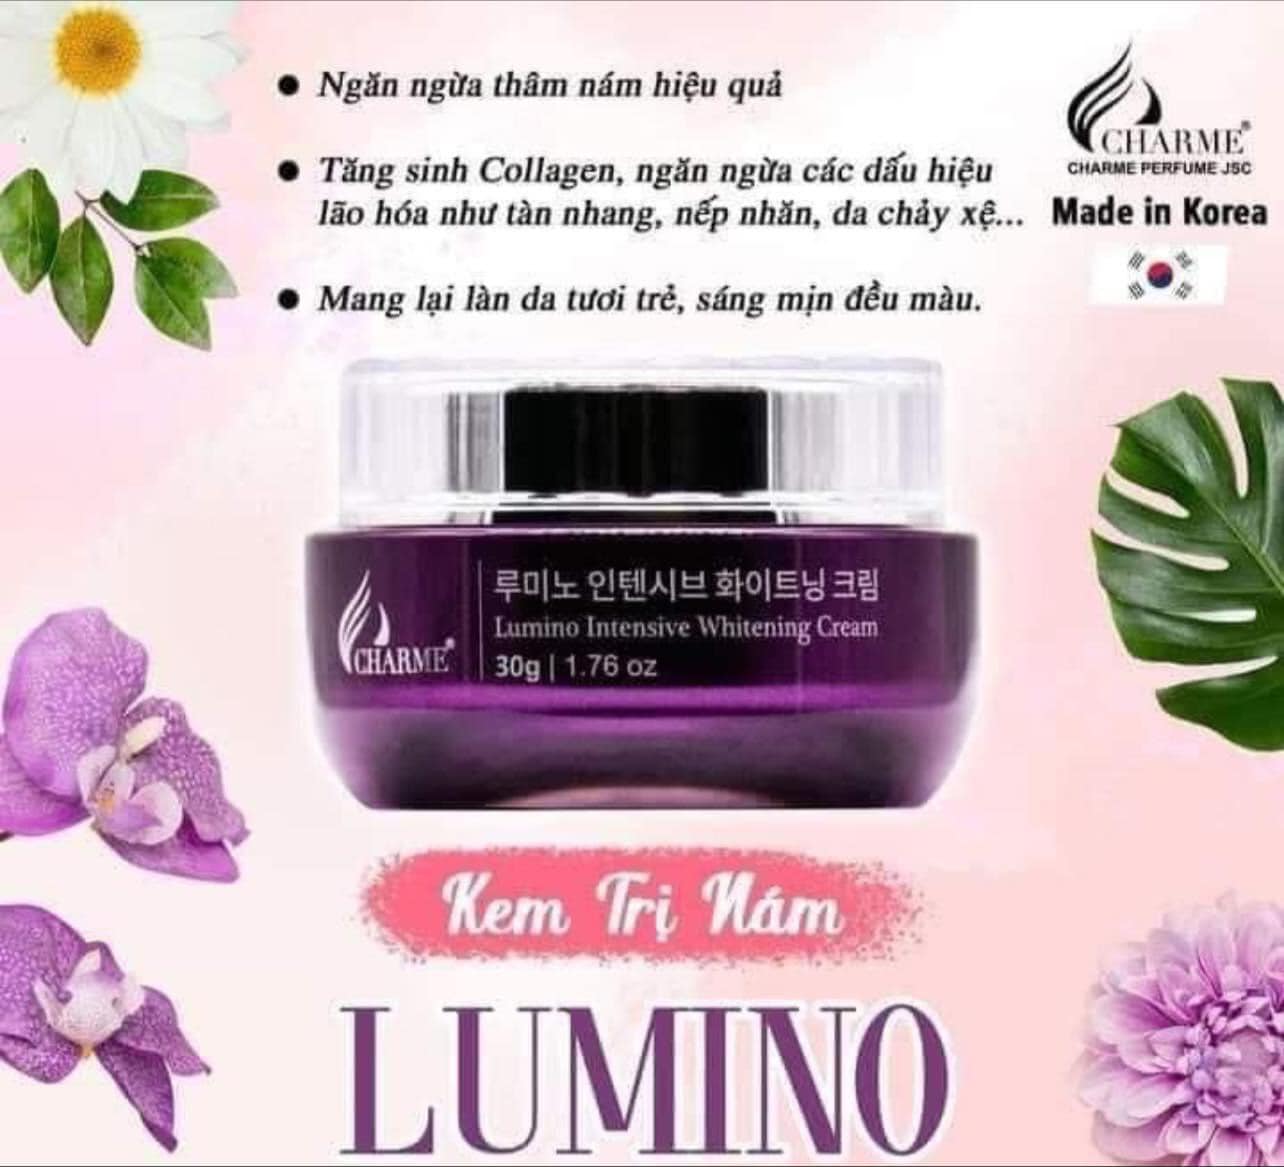 Kem Nám Hàn Quốc Charme Lumino chăm da toàn diện dưỡng sáng ngừa thâm nám